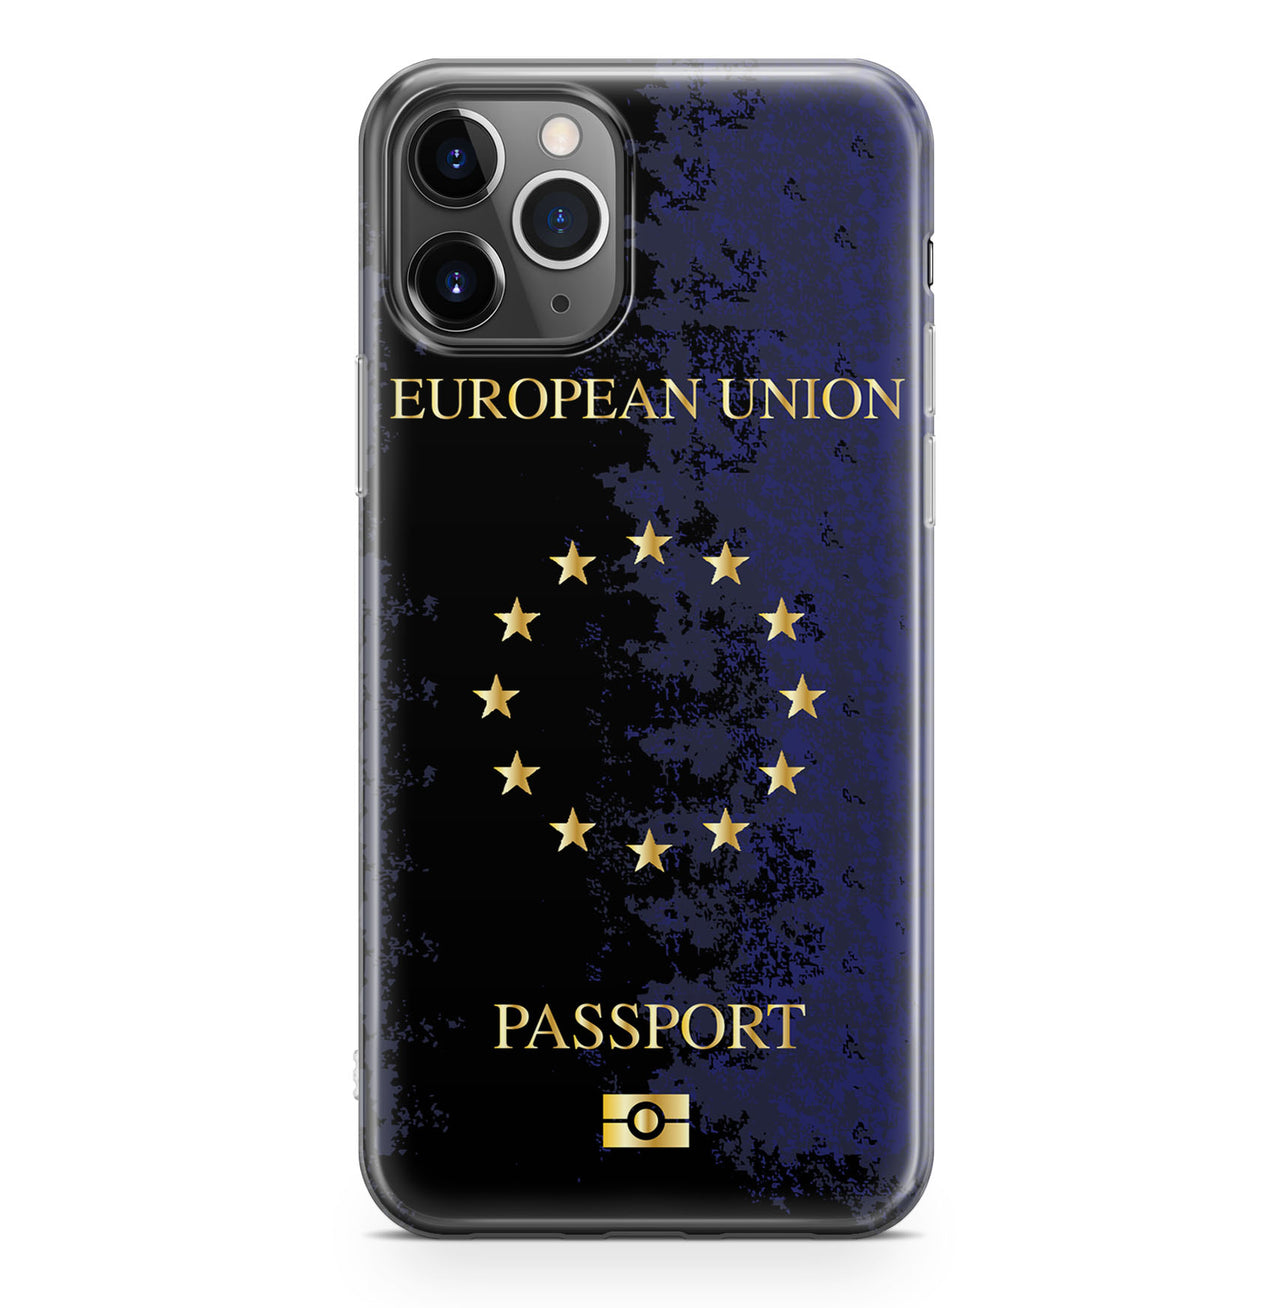 European Union Passport Designed iPhone Cases